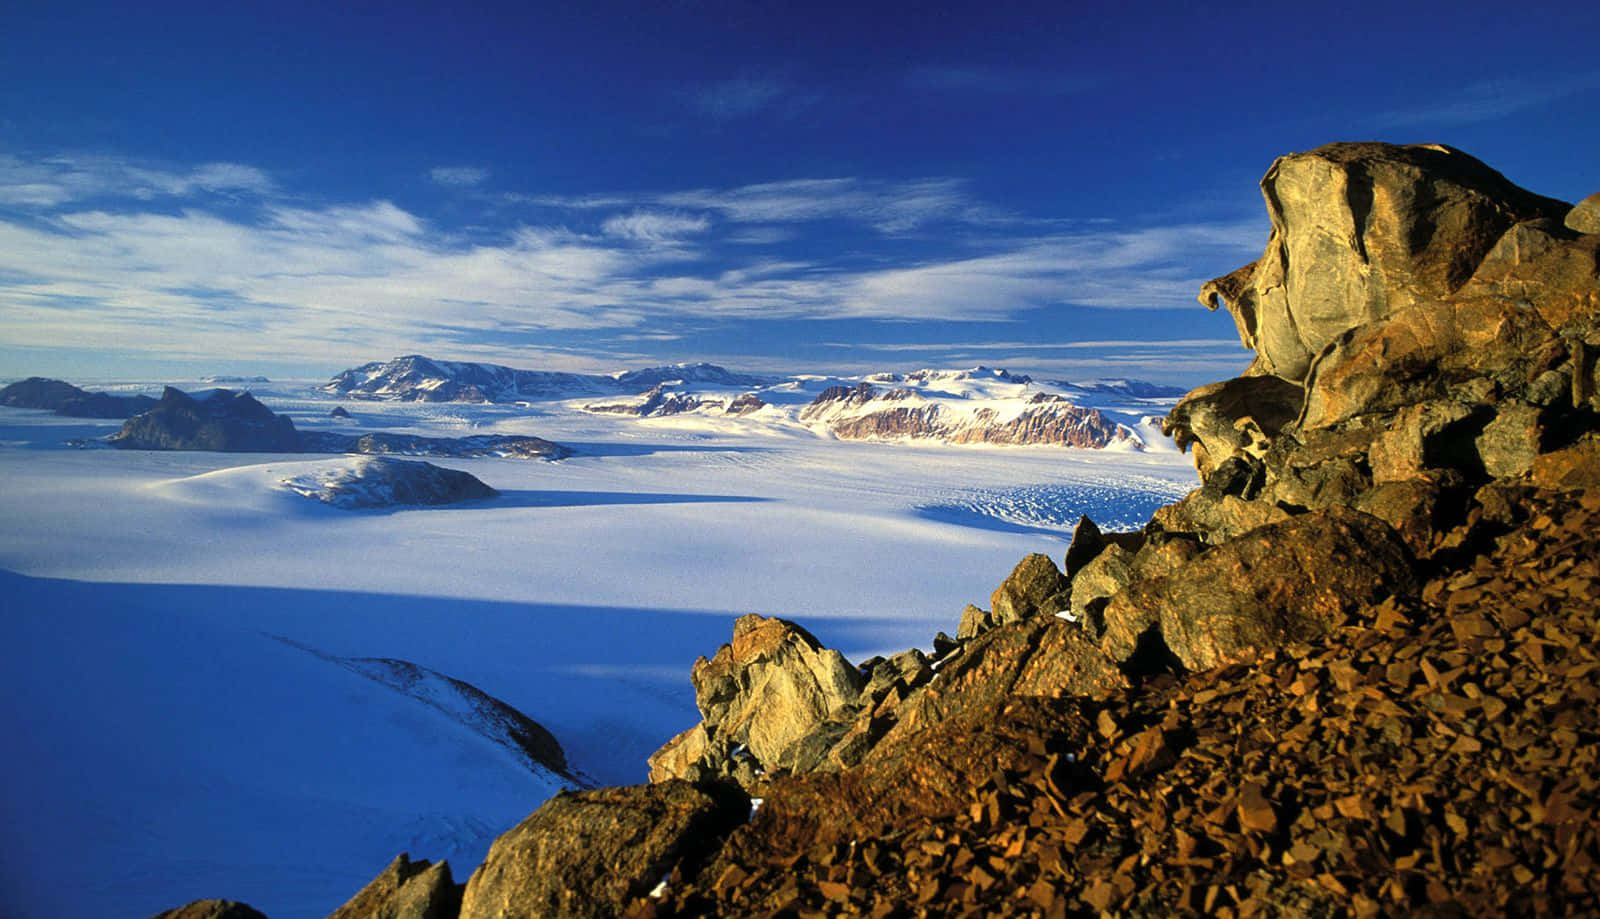 Forbløffendeudsigt Over Iskolde Antarktis.